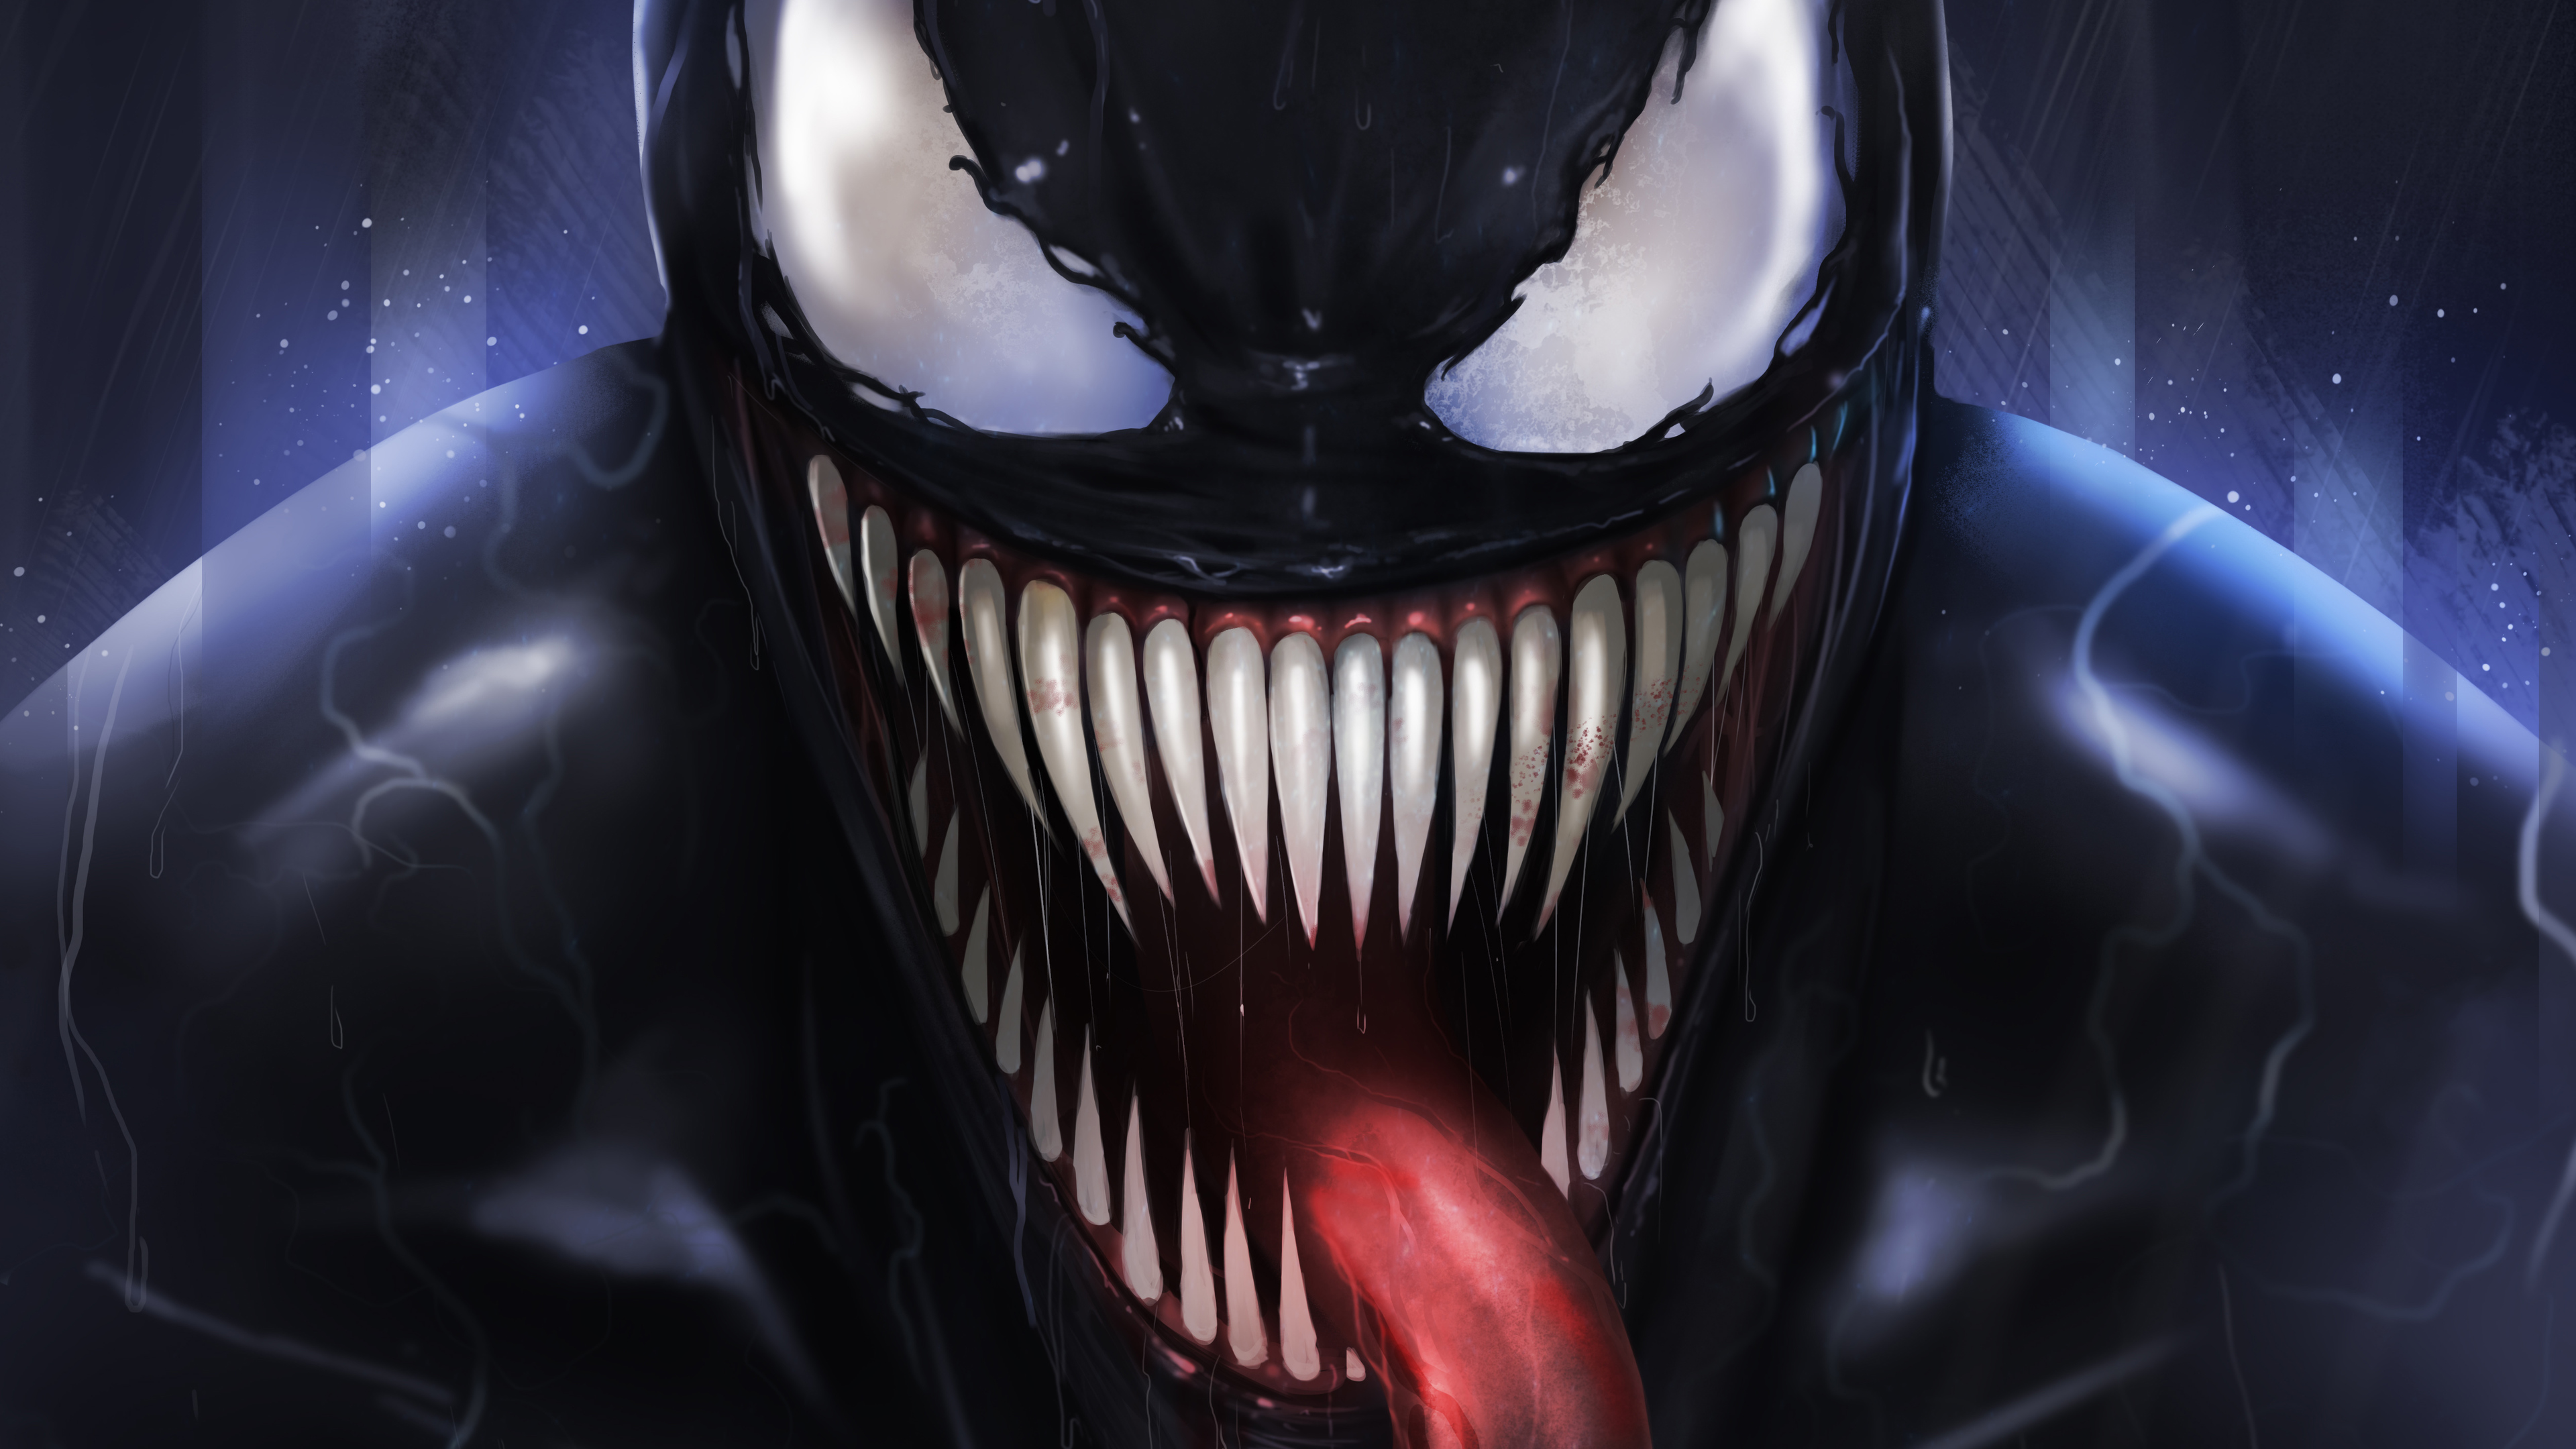 Venom Digital Fan Art 5k Venom wallpapers, superheroes wallpapers, hd